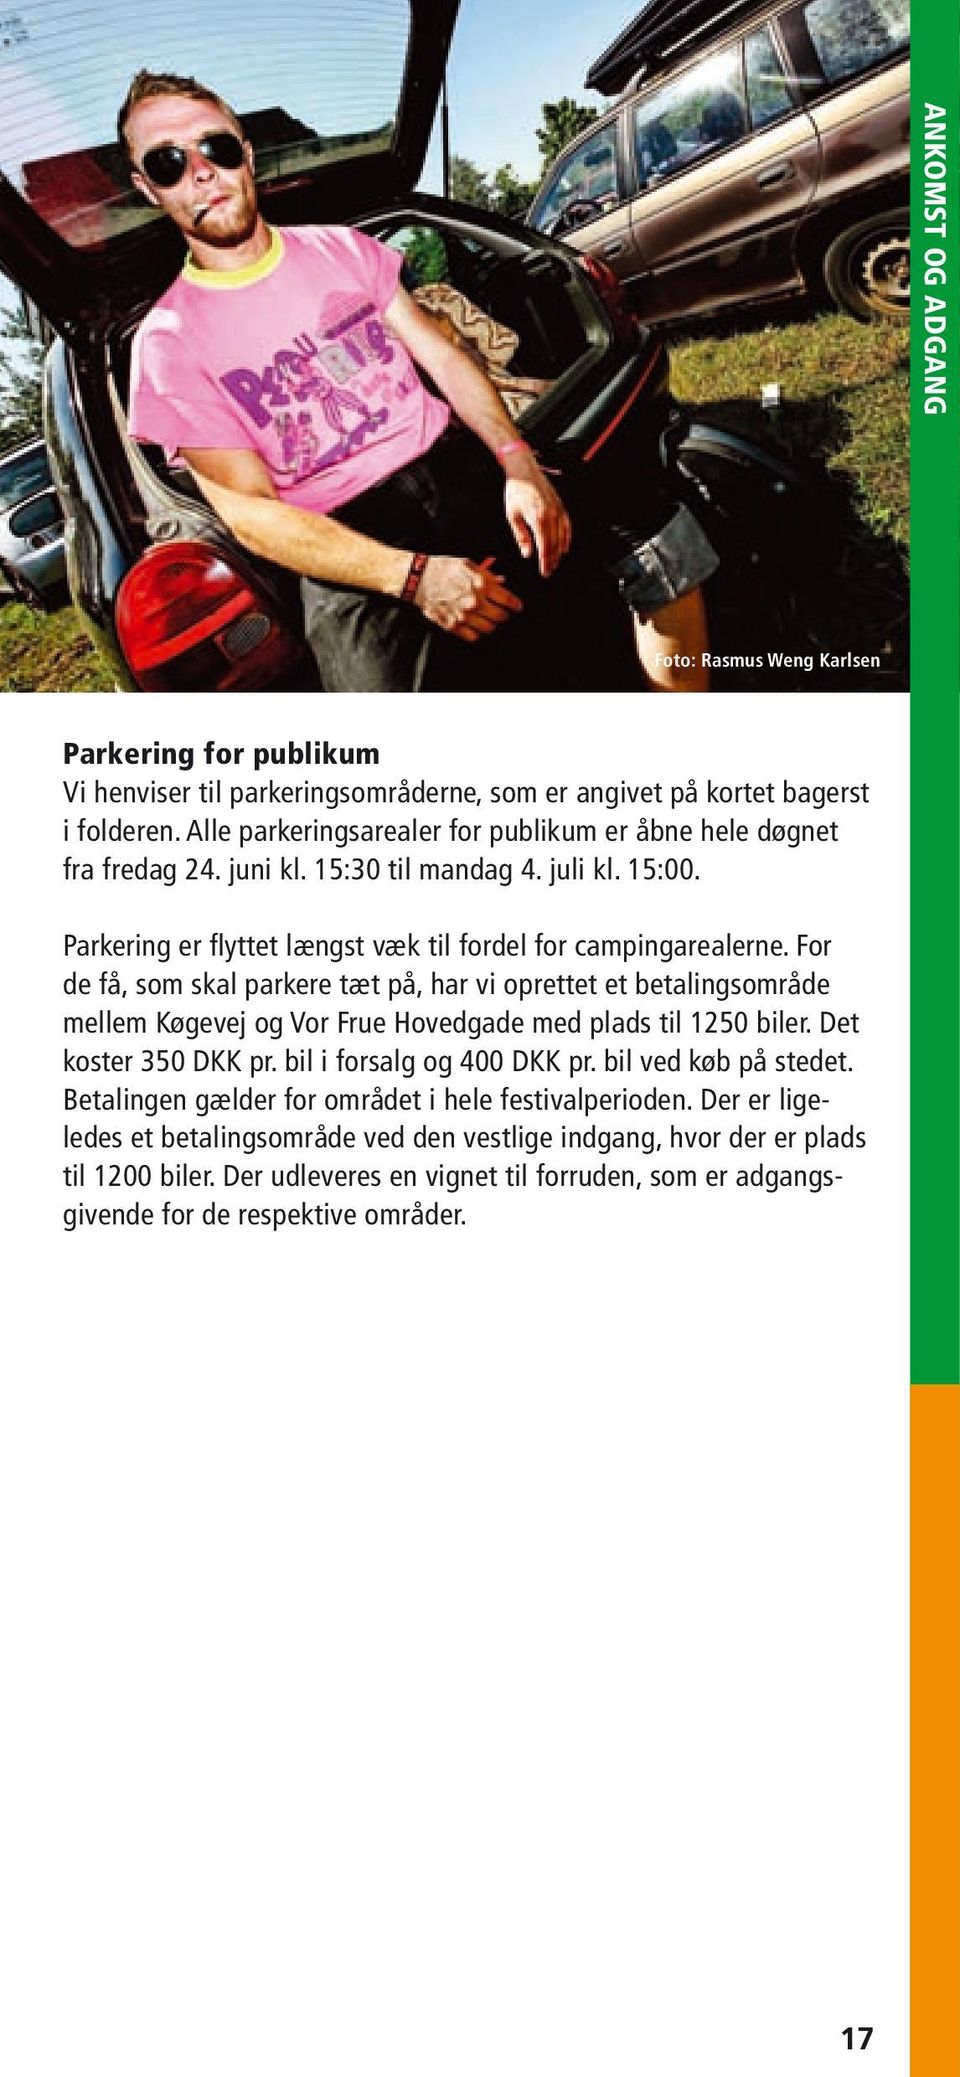 For de få, som skal parkere tæt på, har vi oprettet et betalingsområde mellem Køgevej og Vor Frue Hovedgade med plads til 1250 biler. Det koster 350 DKK pr. bil i forsalg og 400 DKK pr.